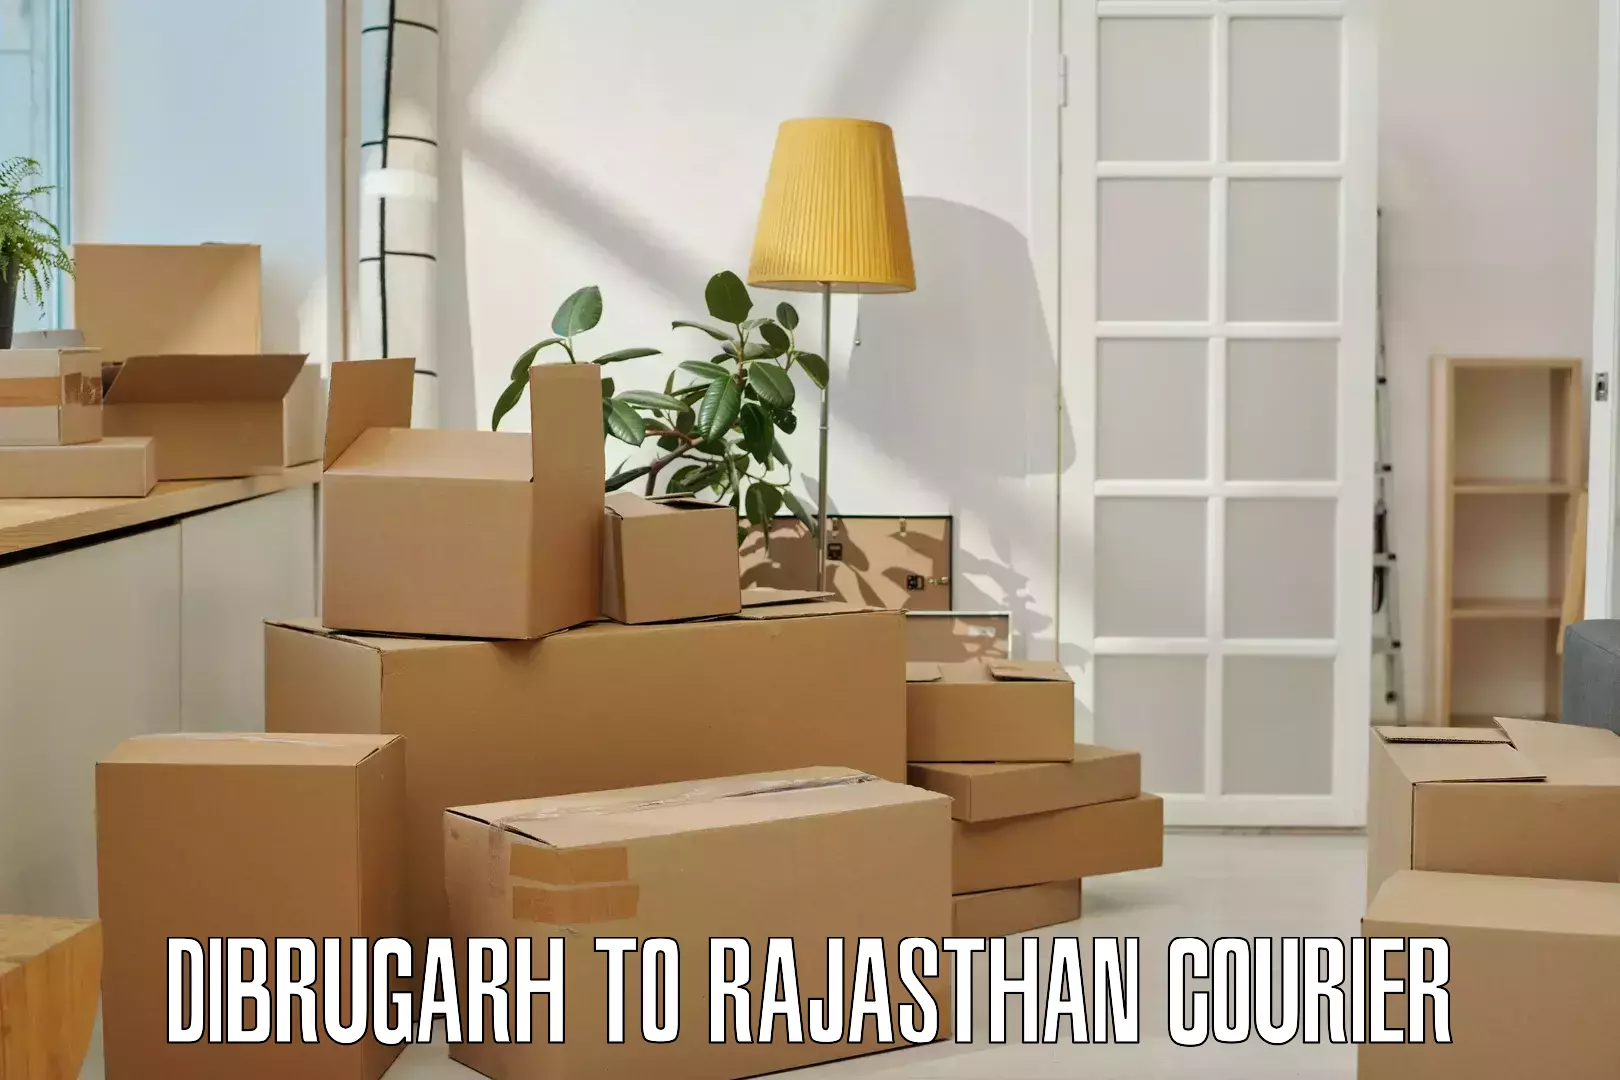 Professional courier handling Dibrugarh to Khinwara